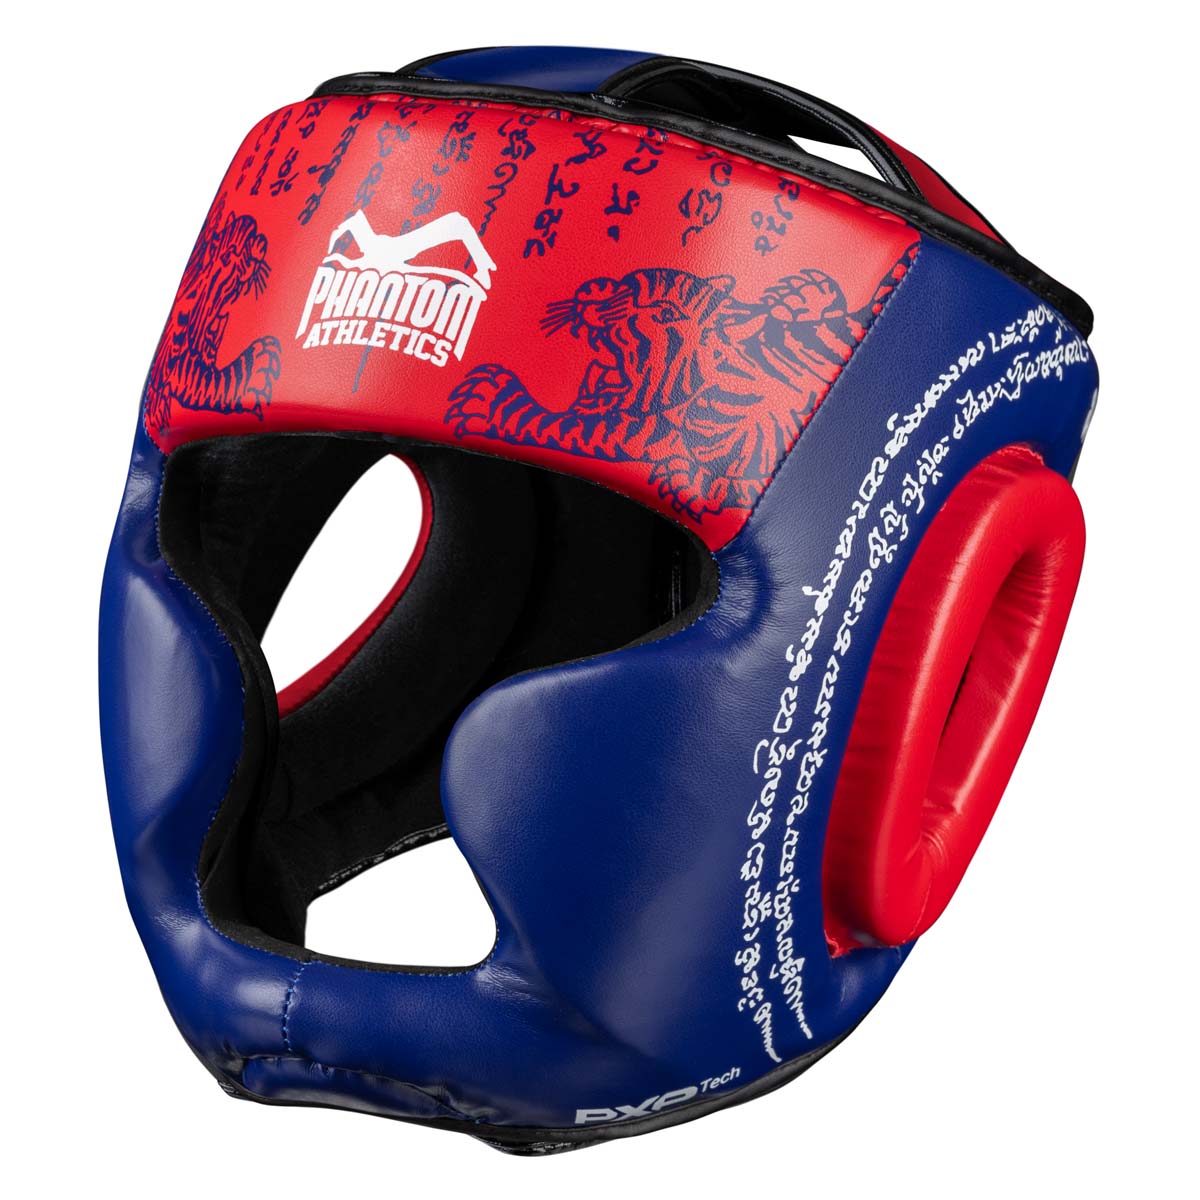 Protection de tête Phantom Muay Thai pour la boxe thaïlandaise et le sparring MMA, la compétition et l'entraînement. Dans le design traditionnel Sak Yant et la couleur bleu/rouge.